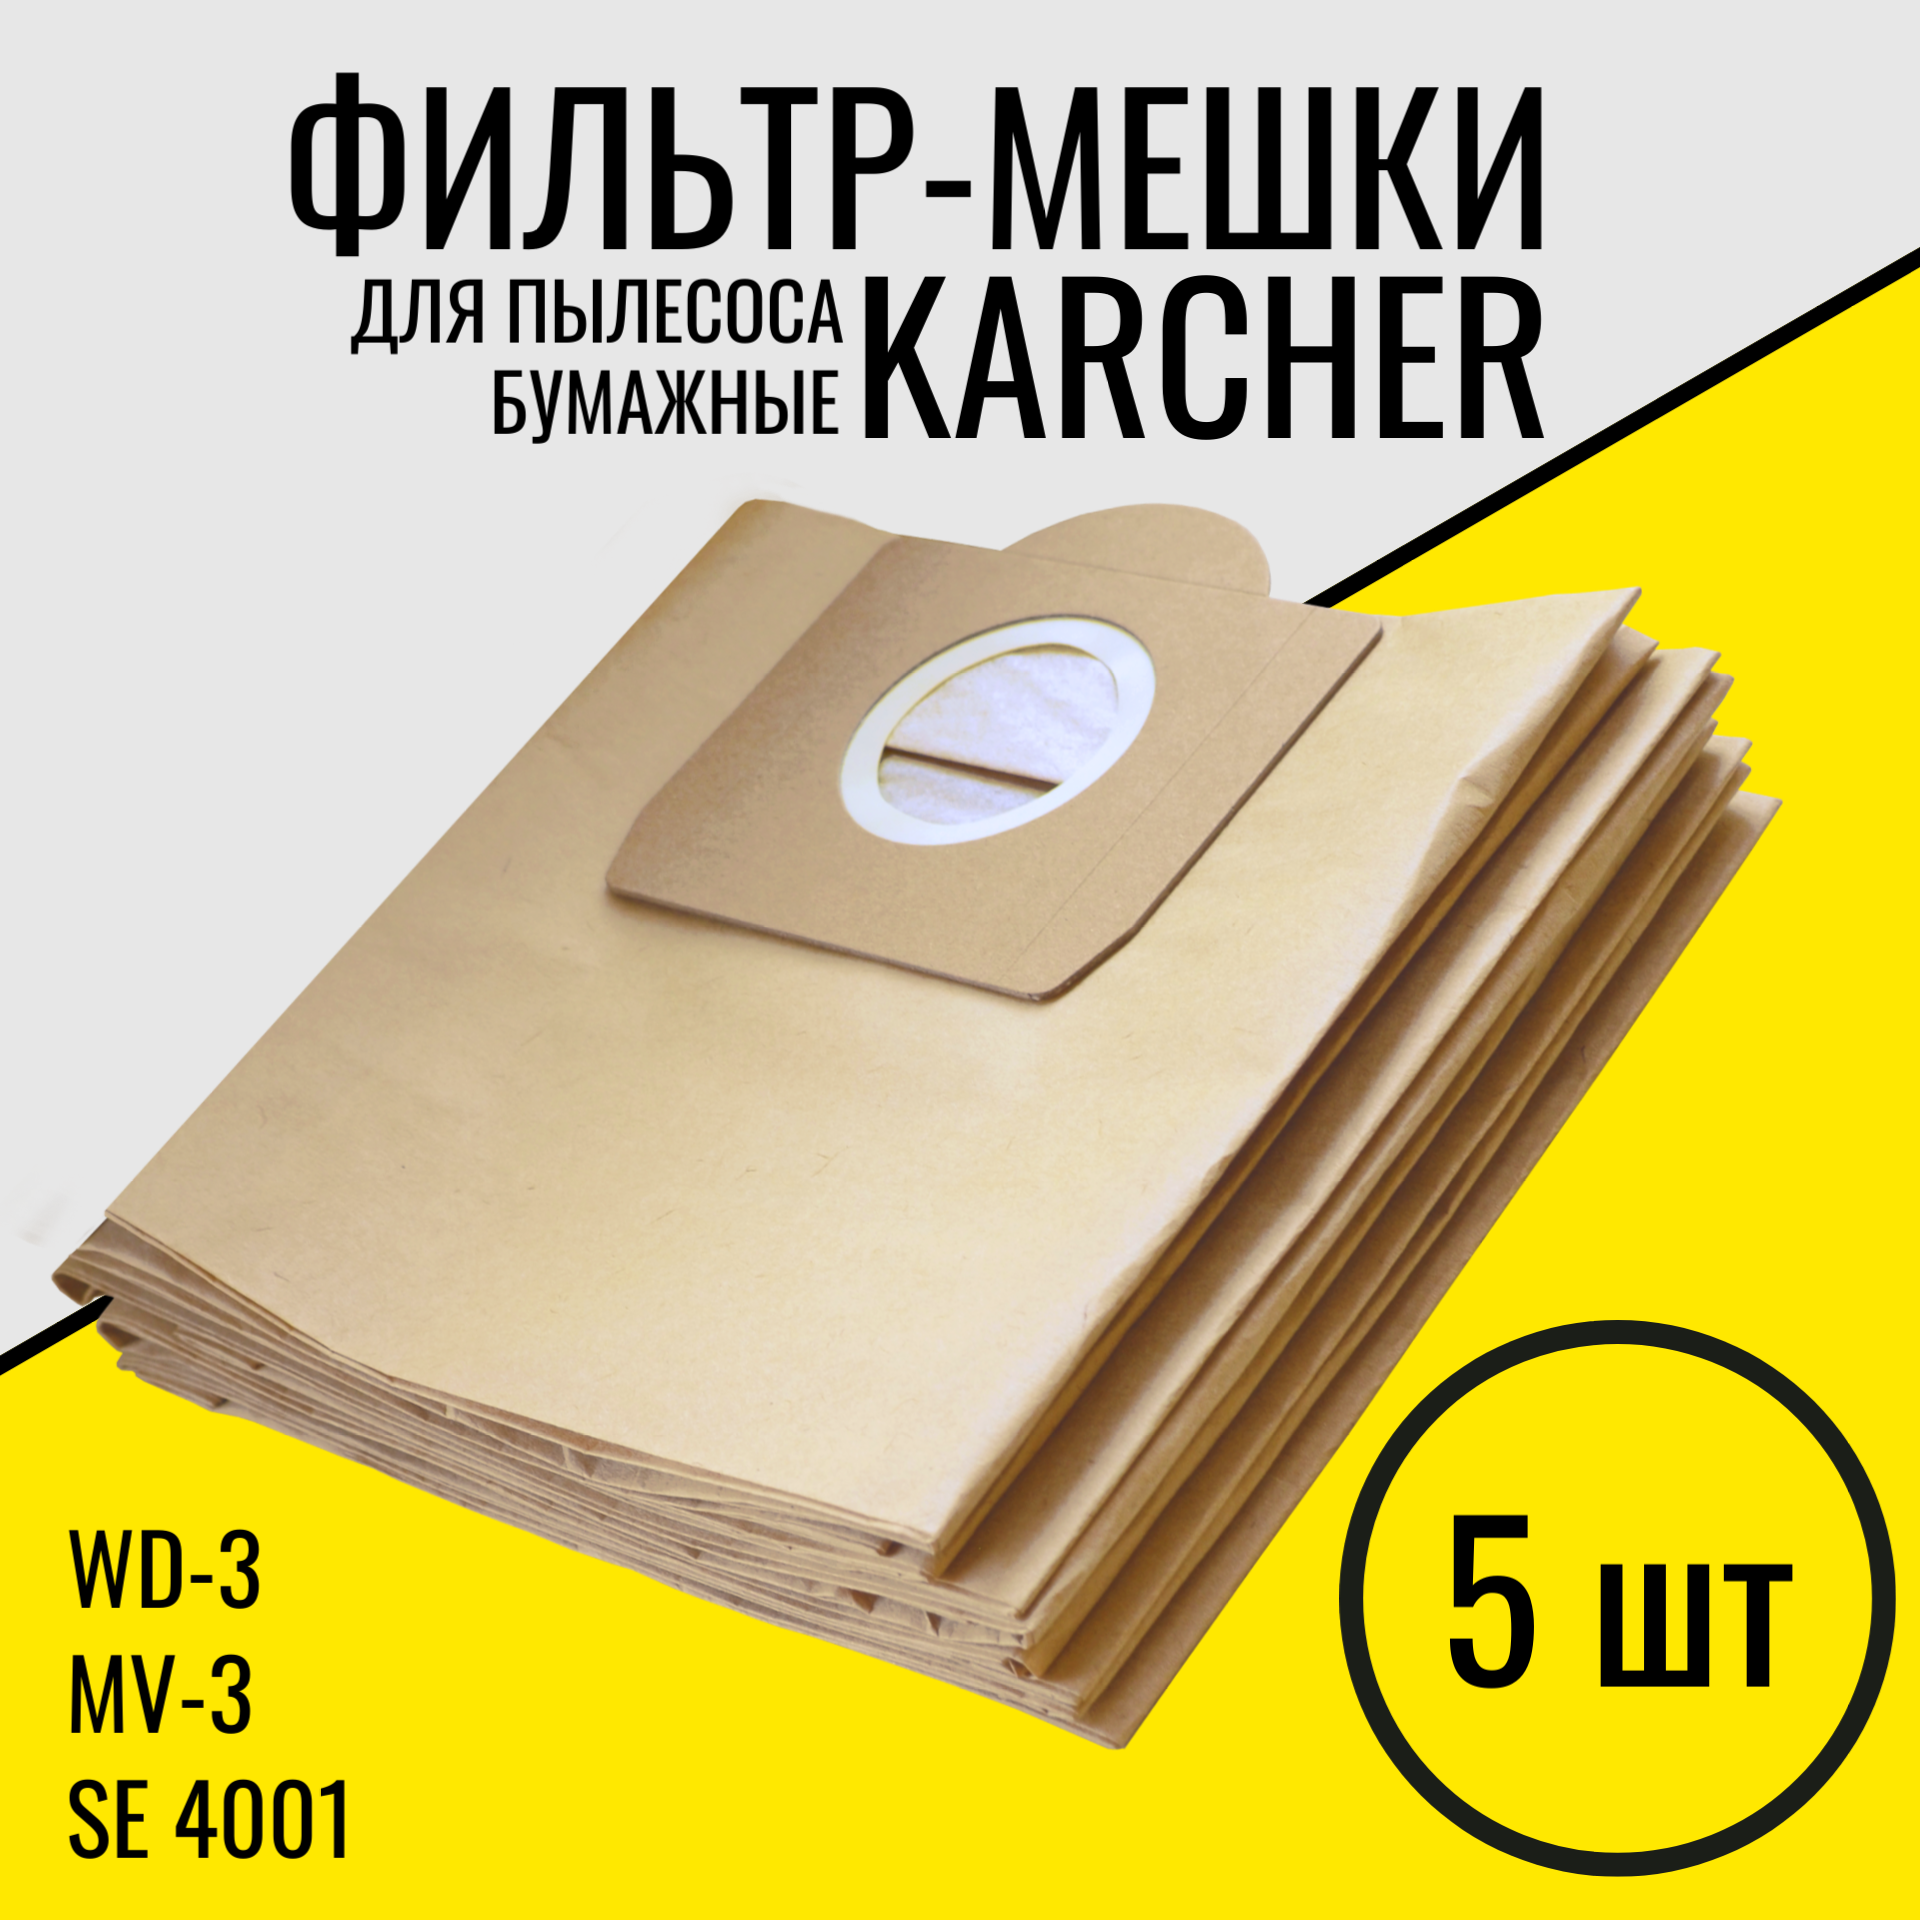 Мешки для пылесоса Karcher WD3. 5 шт  Фильтр - мешки пылесборники для Керхер WD3